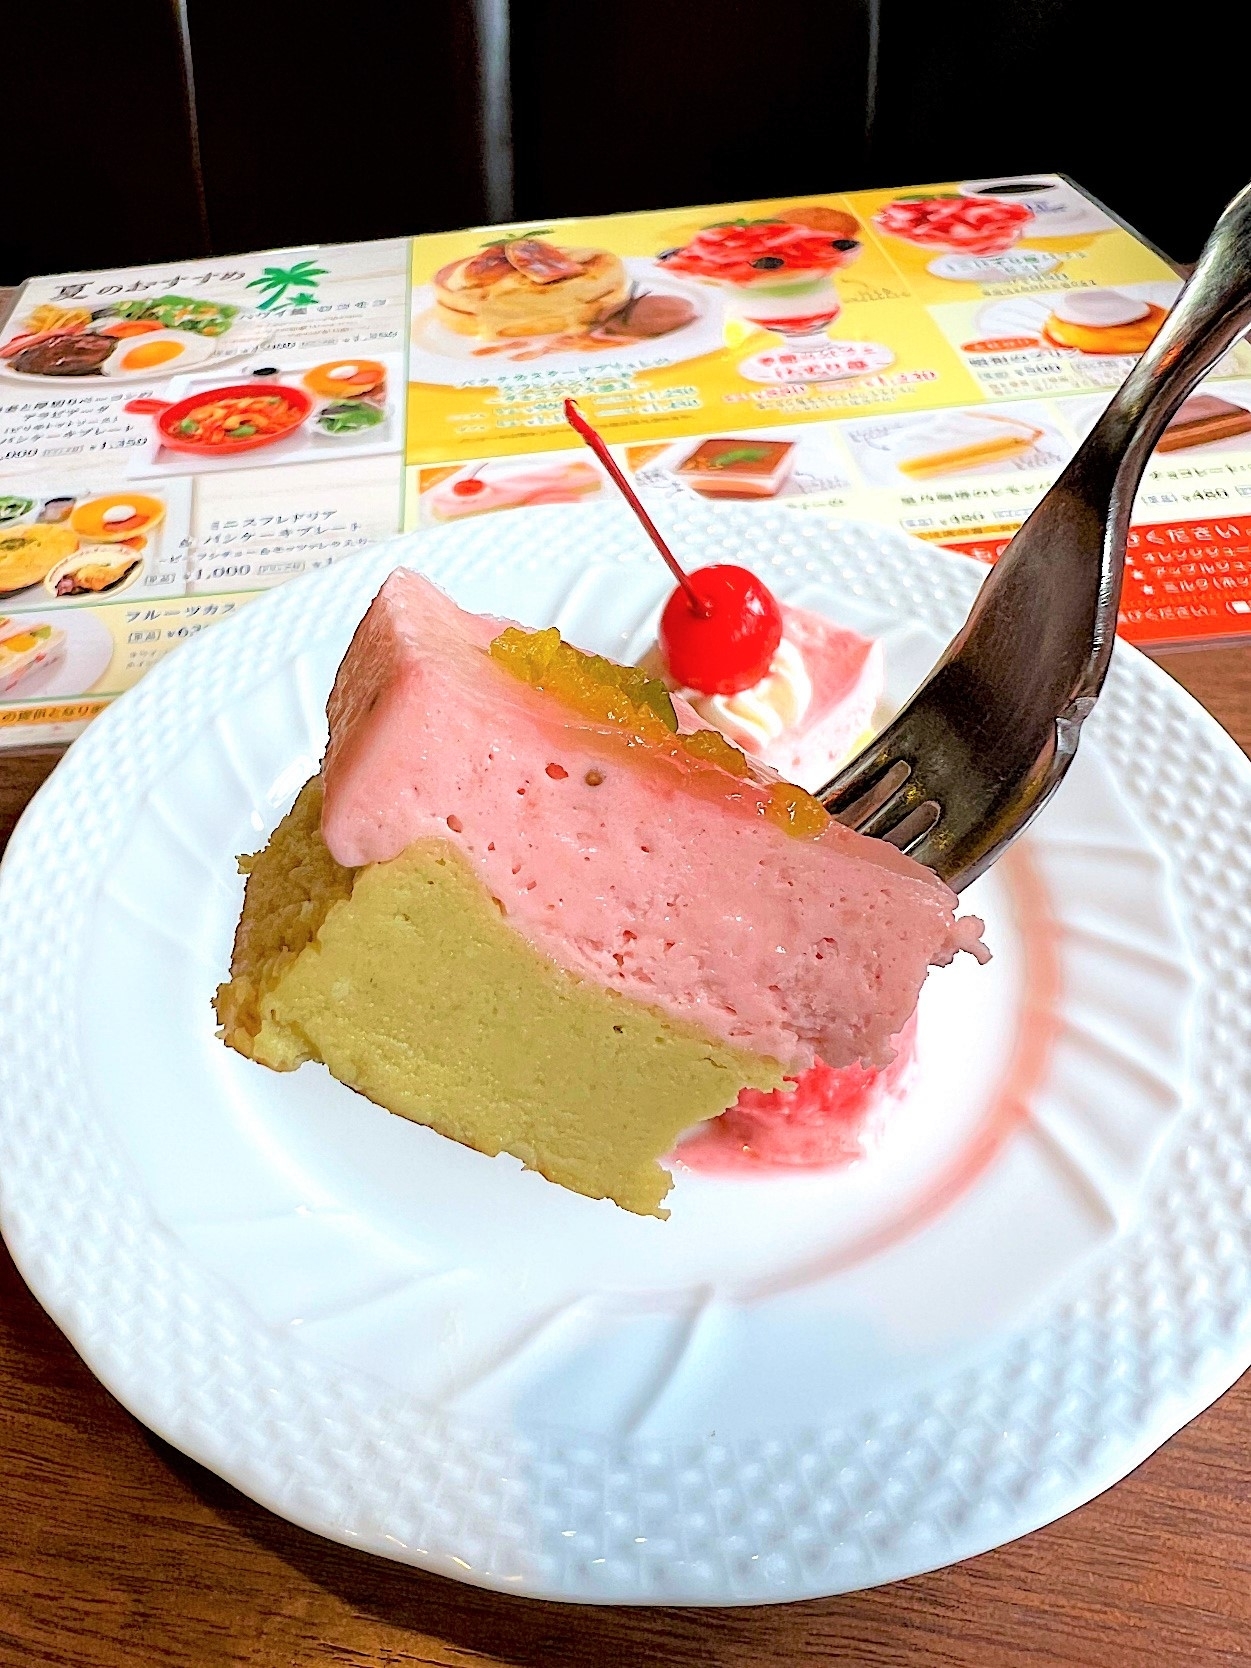 星乃珈琲店のオススメのケーキ「苺とピスタチオのWチーズケーキ」